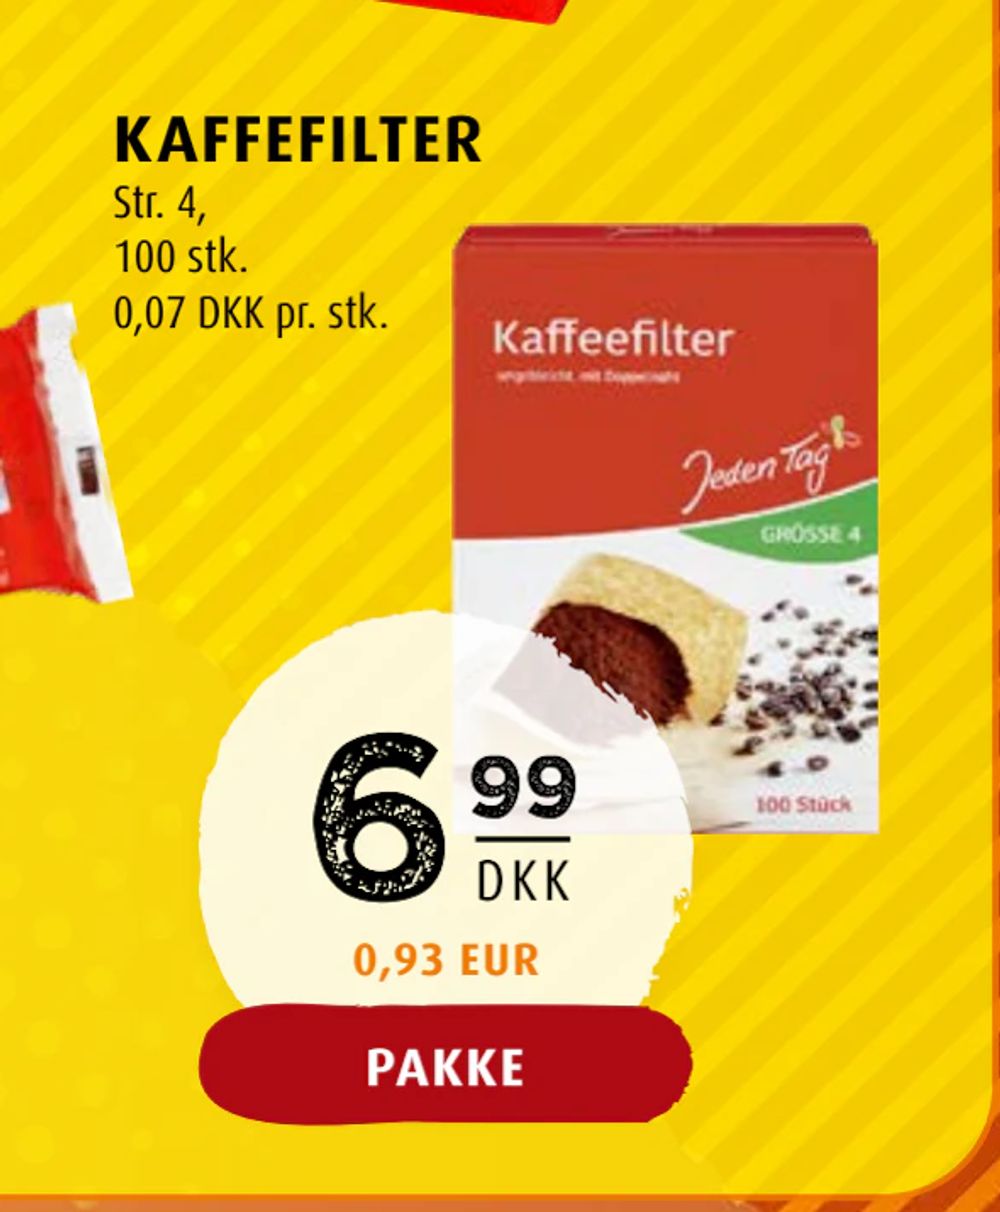 Tilbud på KAFFEFILTER fra Scandinavian Park til 6,99 kr.